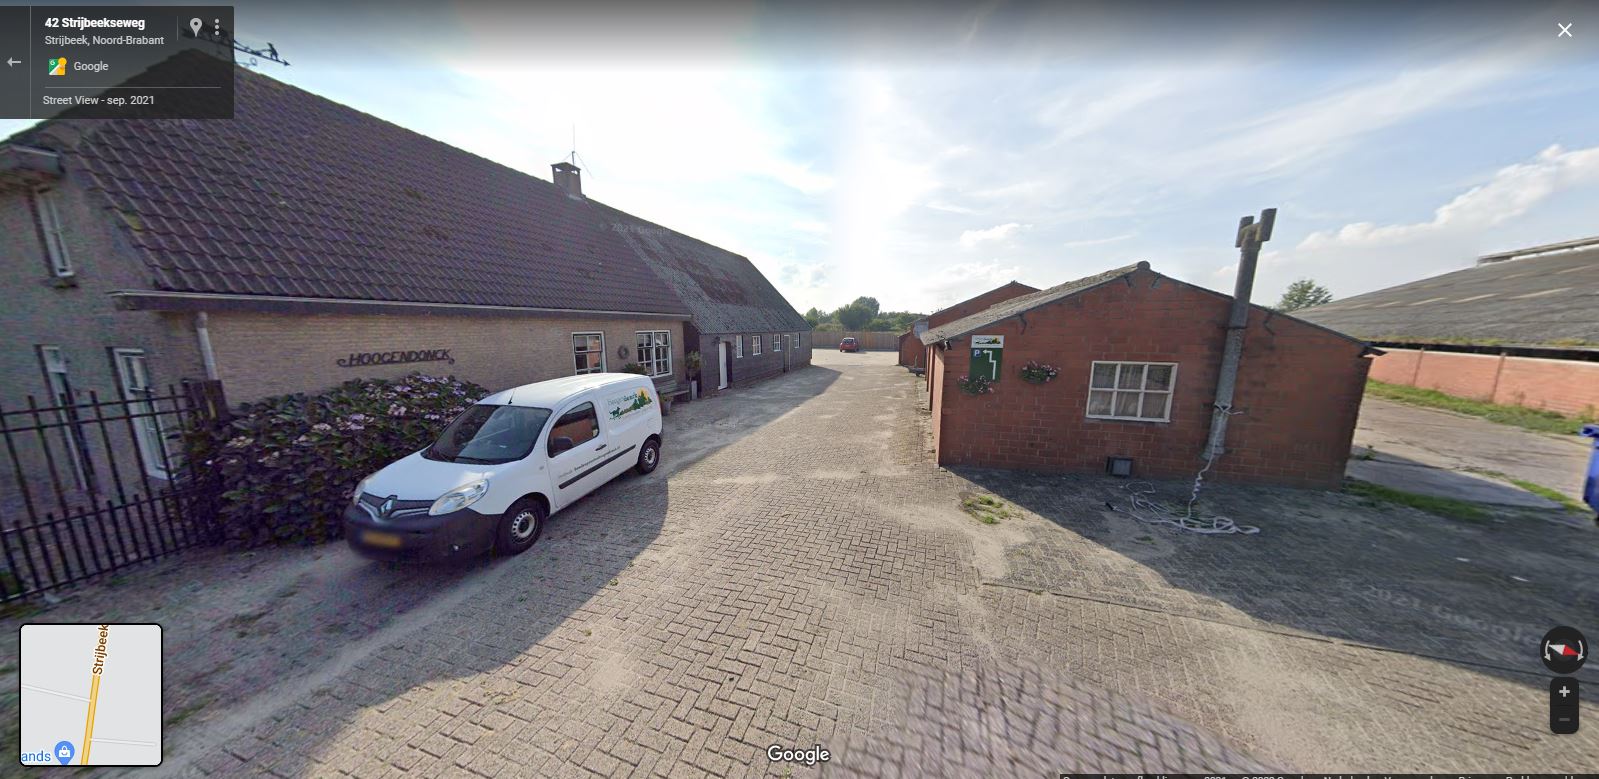 strijbeek__strijbeekseweg_42__hondenpension_hoogendonck_-_google_maps_-_opname_sept._2021.jpg